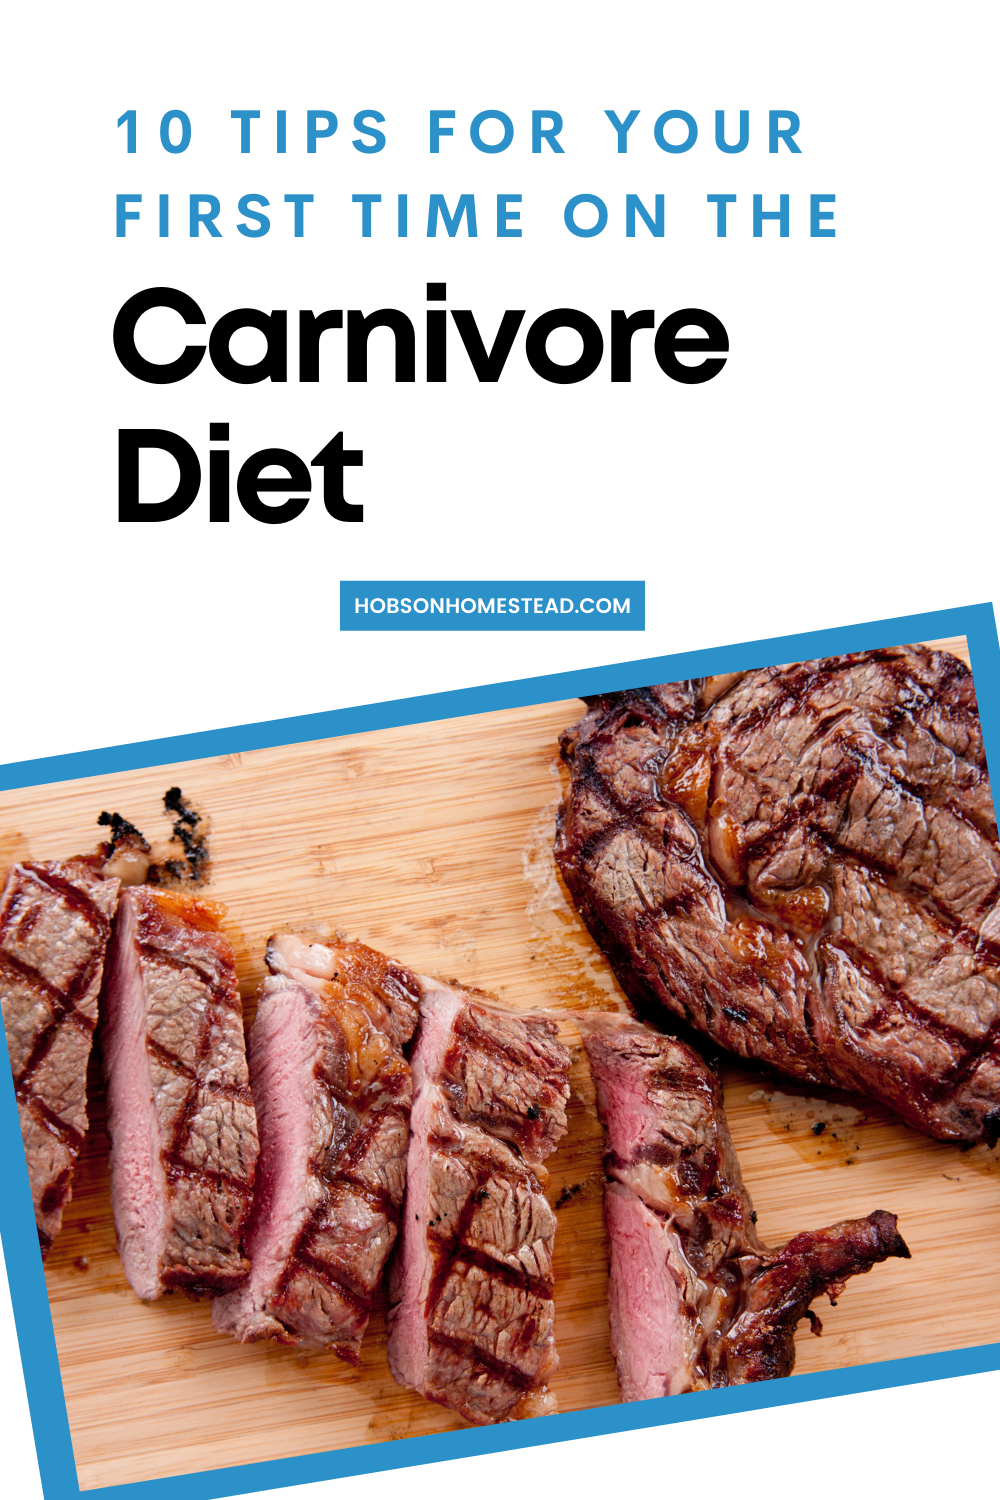 Tips for starting Carnivore diet